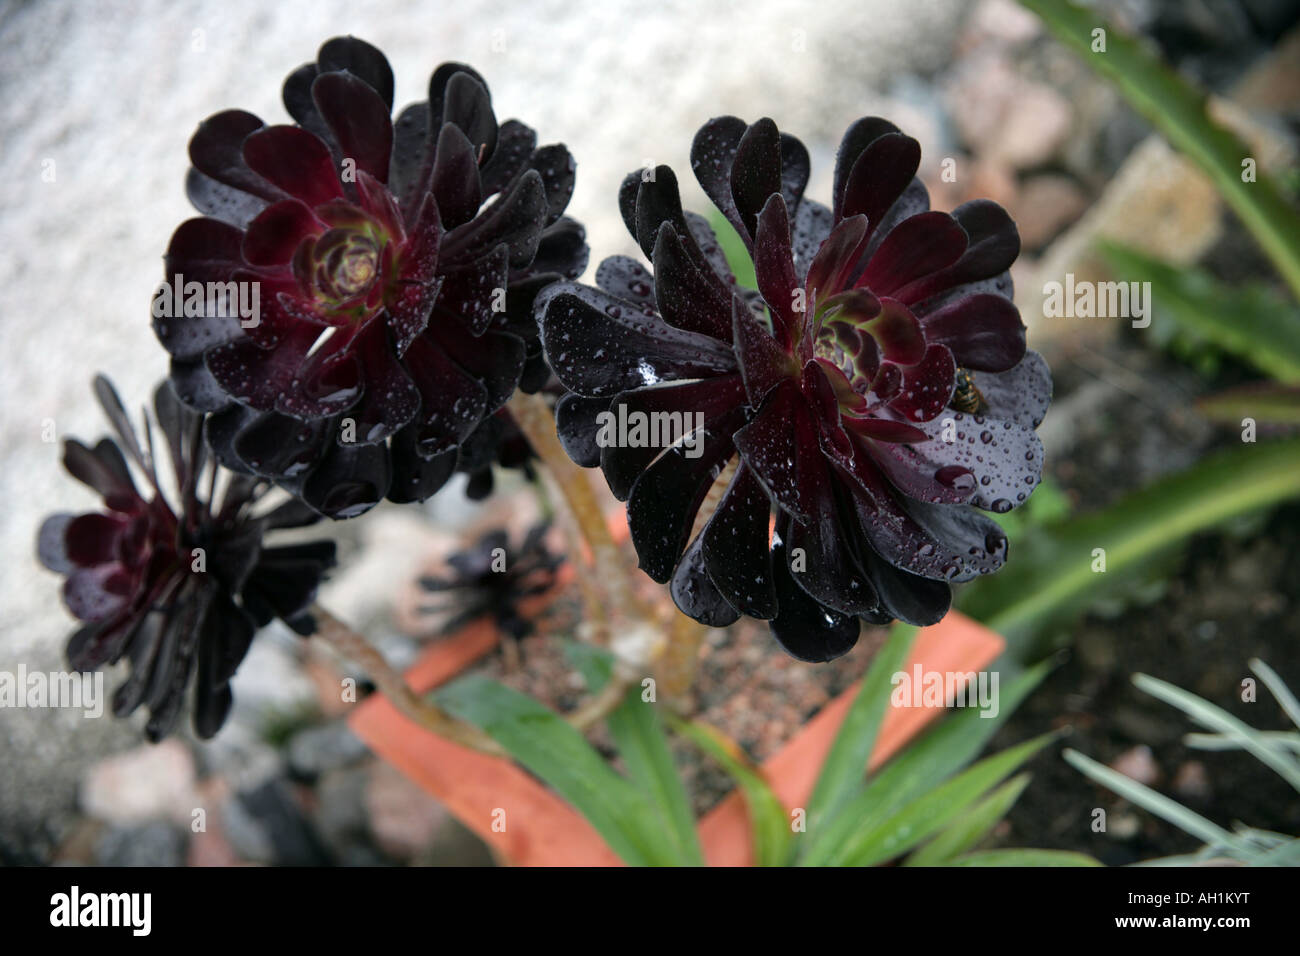 Aeonium arboreum Zwartkop succulentes dans la pluie Banque D'Images